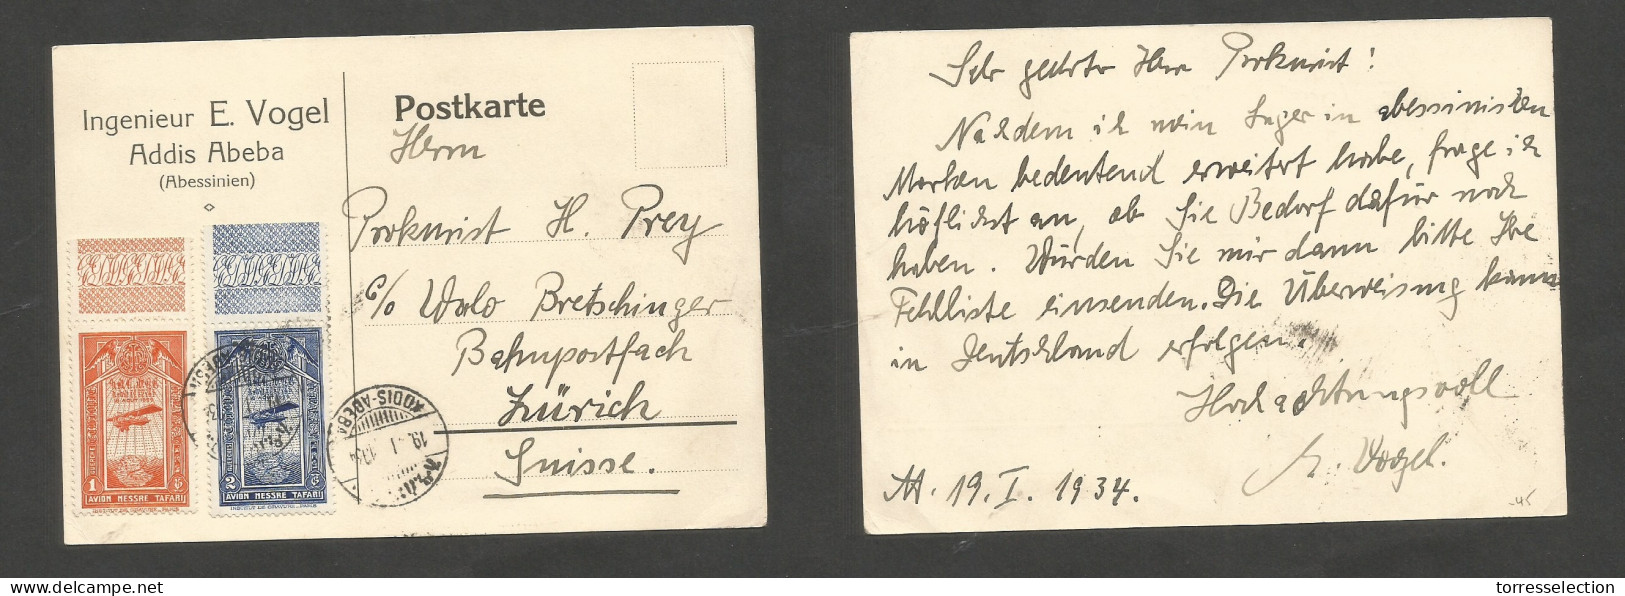 ETHIOPIA. 1934 (19 Jan) Addis Abeba - Switzerland, Zurich. Multifkd Private Card. Air Usage, Margin, Borders. XF. - Etiopía